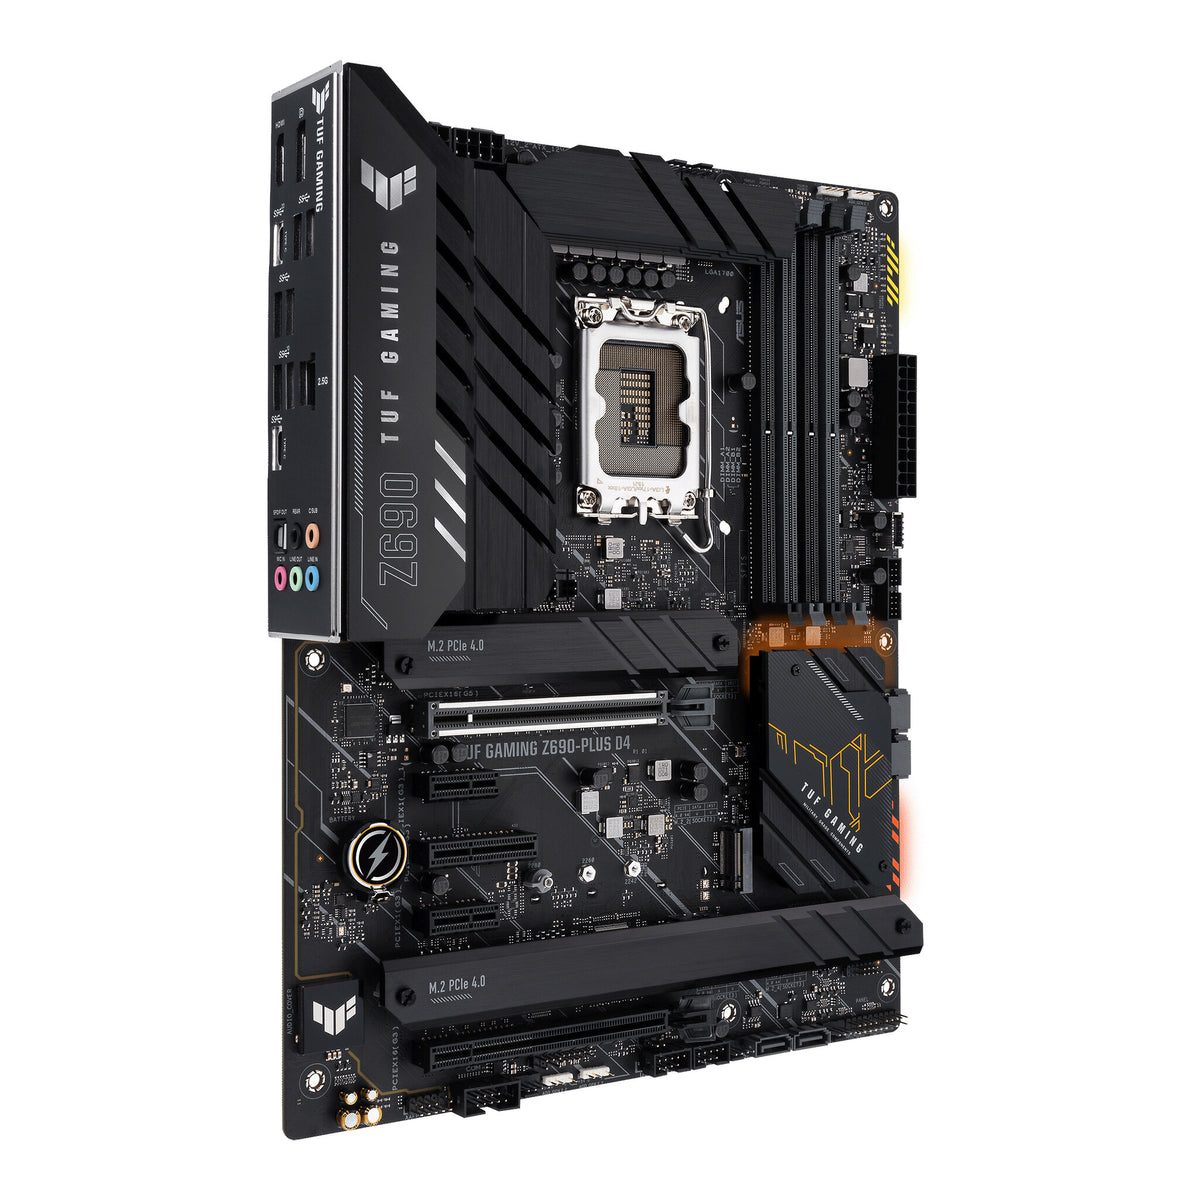 ASUS TUF GAMING Z690-PLUS D4 ATX motherboard - Intel Z690 LGA 1700